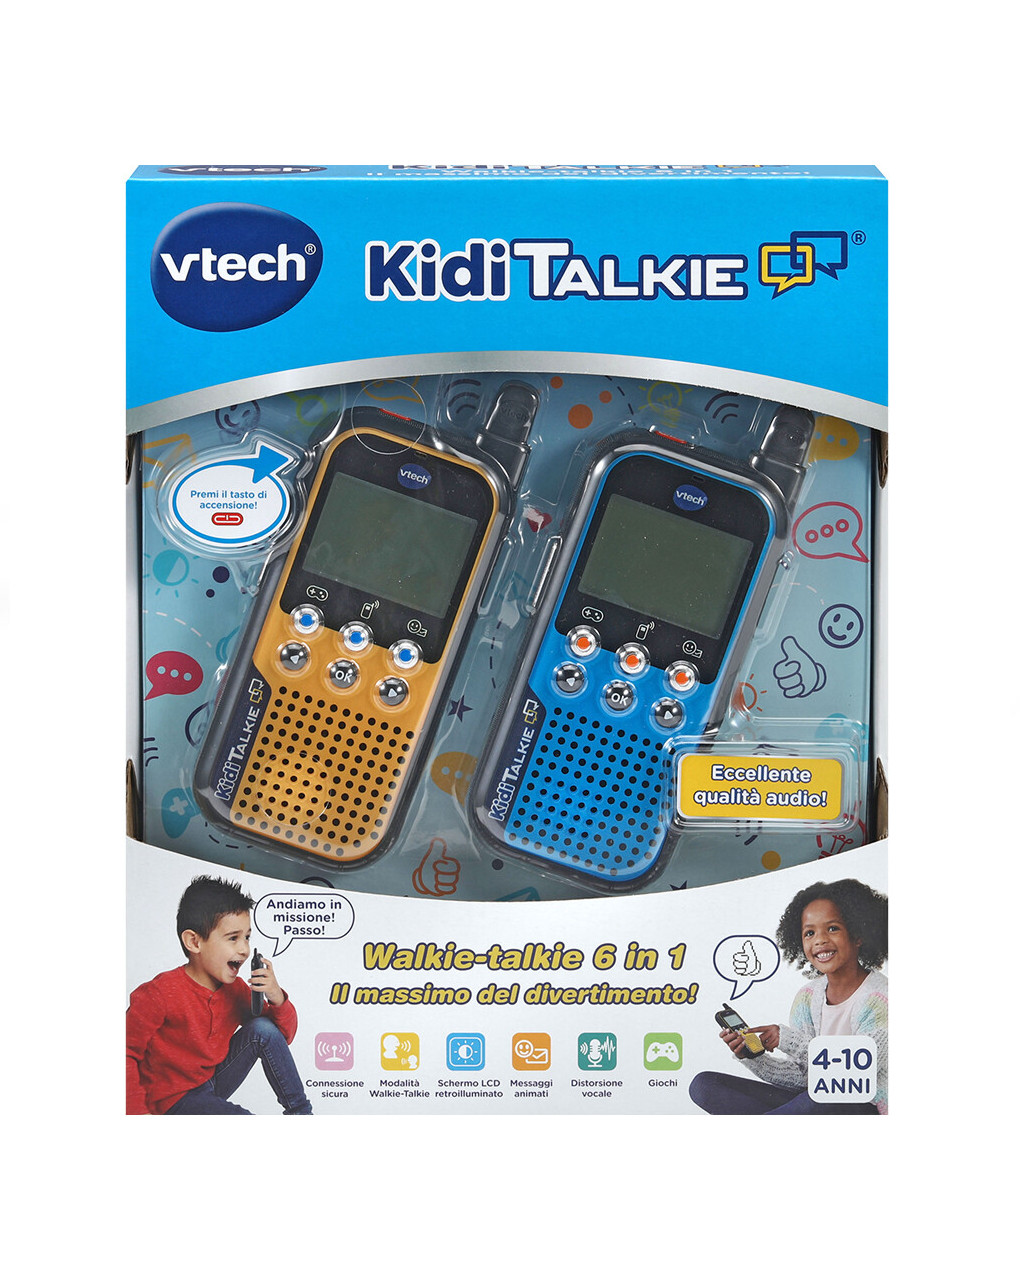 Kidi talkie ® 4-10 ann - vtech - VTECH